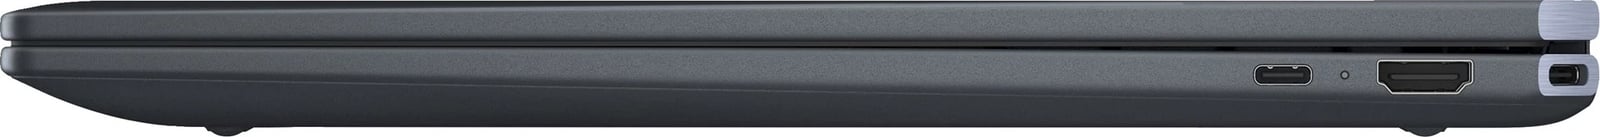 Laptop Hibrid HP Spectre x360 16-aa0065nw, 16 inç, Intel Core Ultra 7, 16 GB RAM, 1 TB SSD, Blu